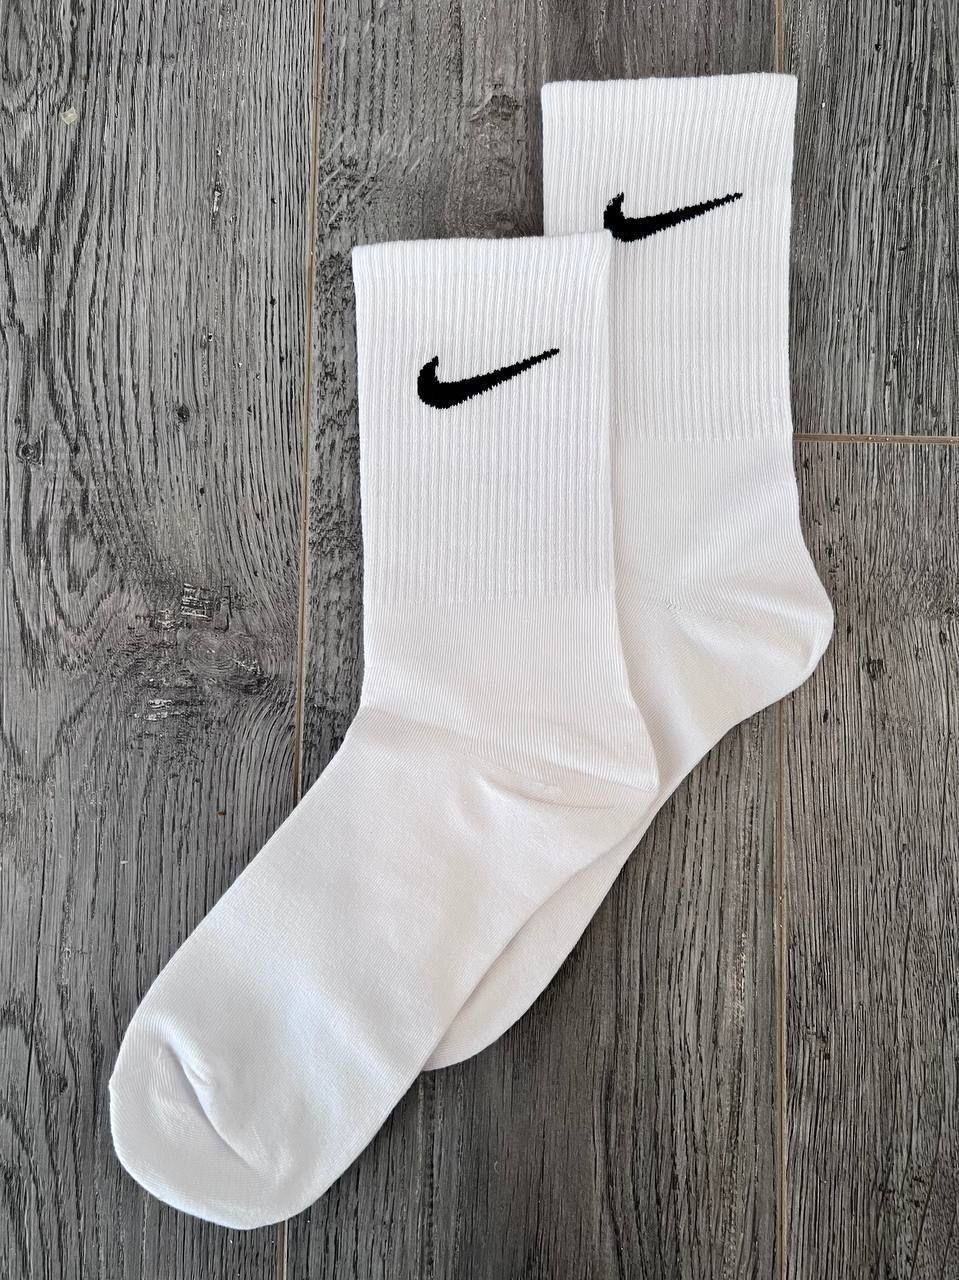 РОЗПРОДАЖ! Високі шкарпетки nake | білі шкарпетки найк | ОПТ носки